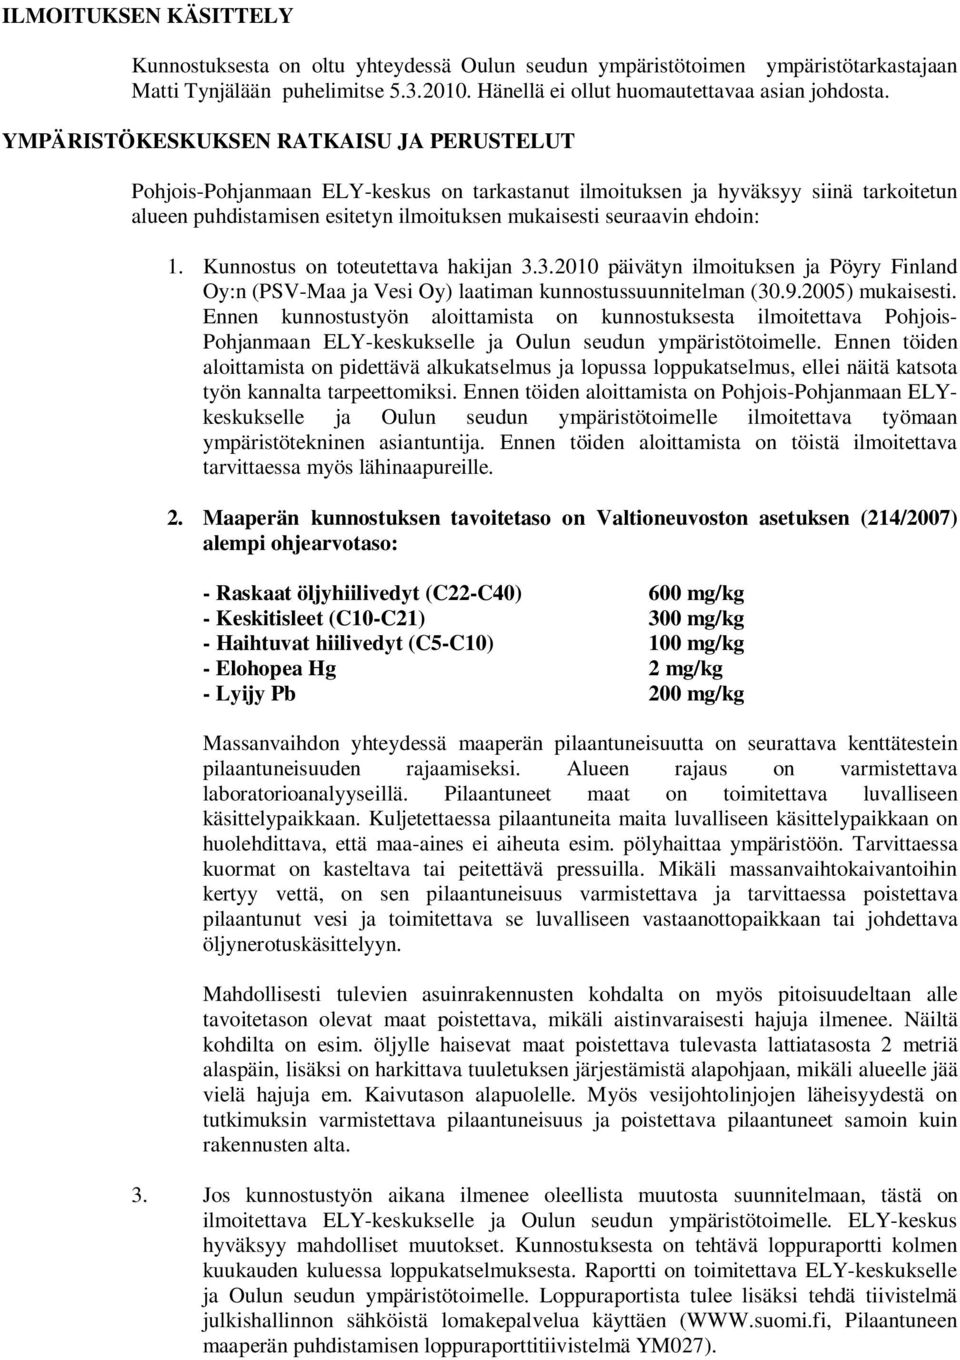 1. Kunnostus on toteutettava hakijan 3.3.2010 päivätyn ilmoituksen ja Pöyry Finland Oy:n (PSV-Maa ja Vesi Oy) laatiman kunnostussuunnitelman (30.9.2005) mukaisesti.